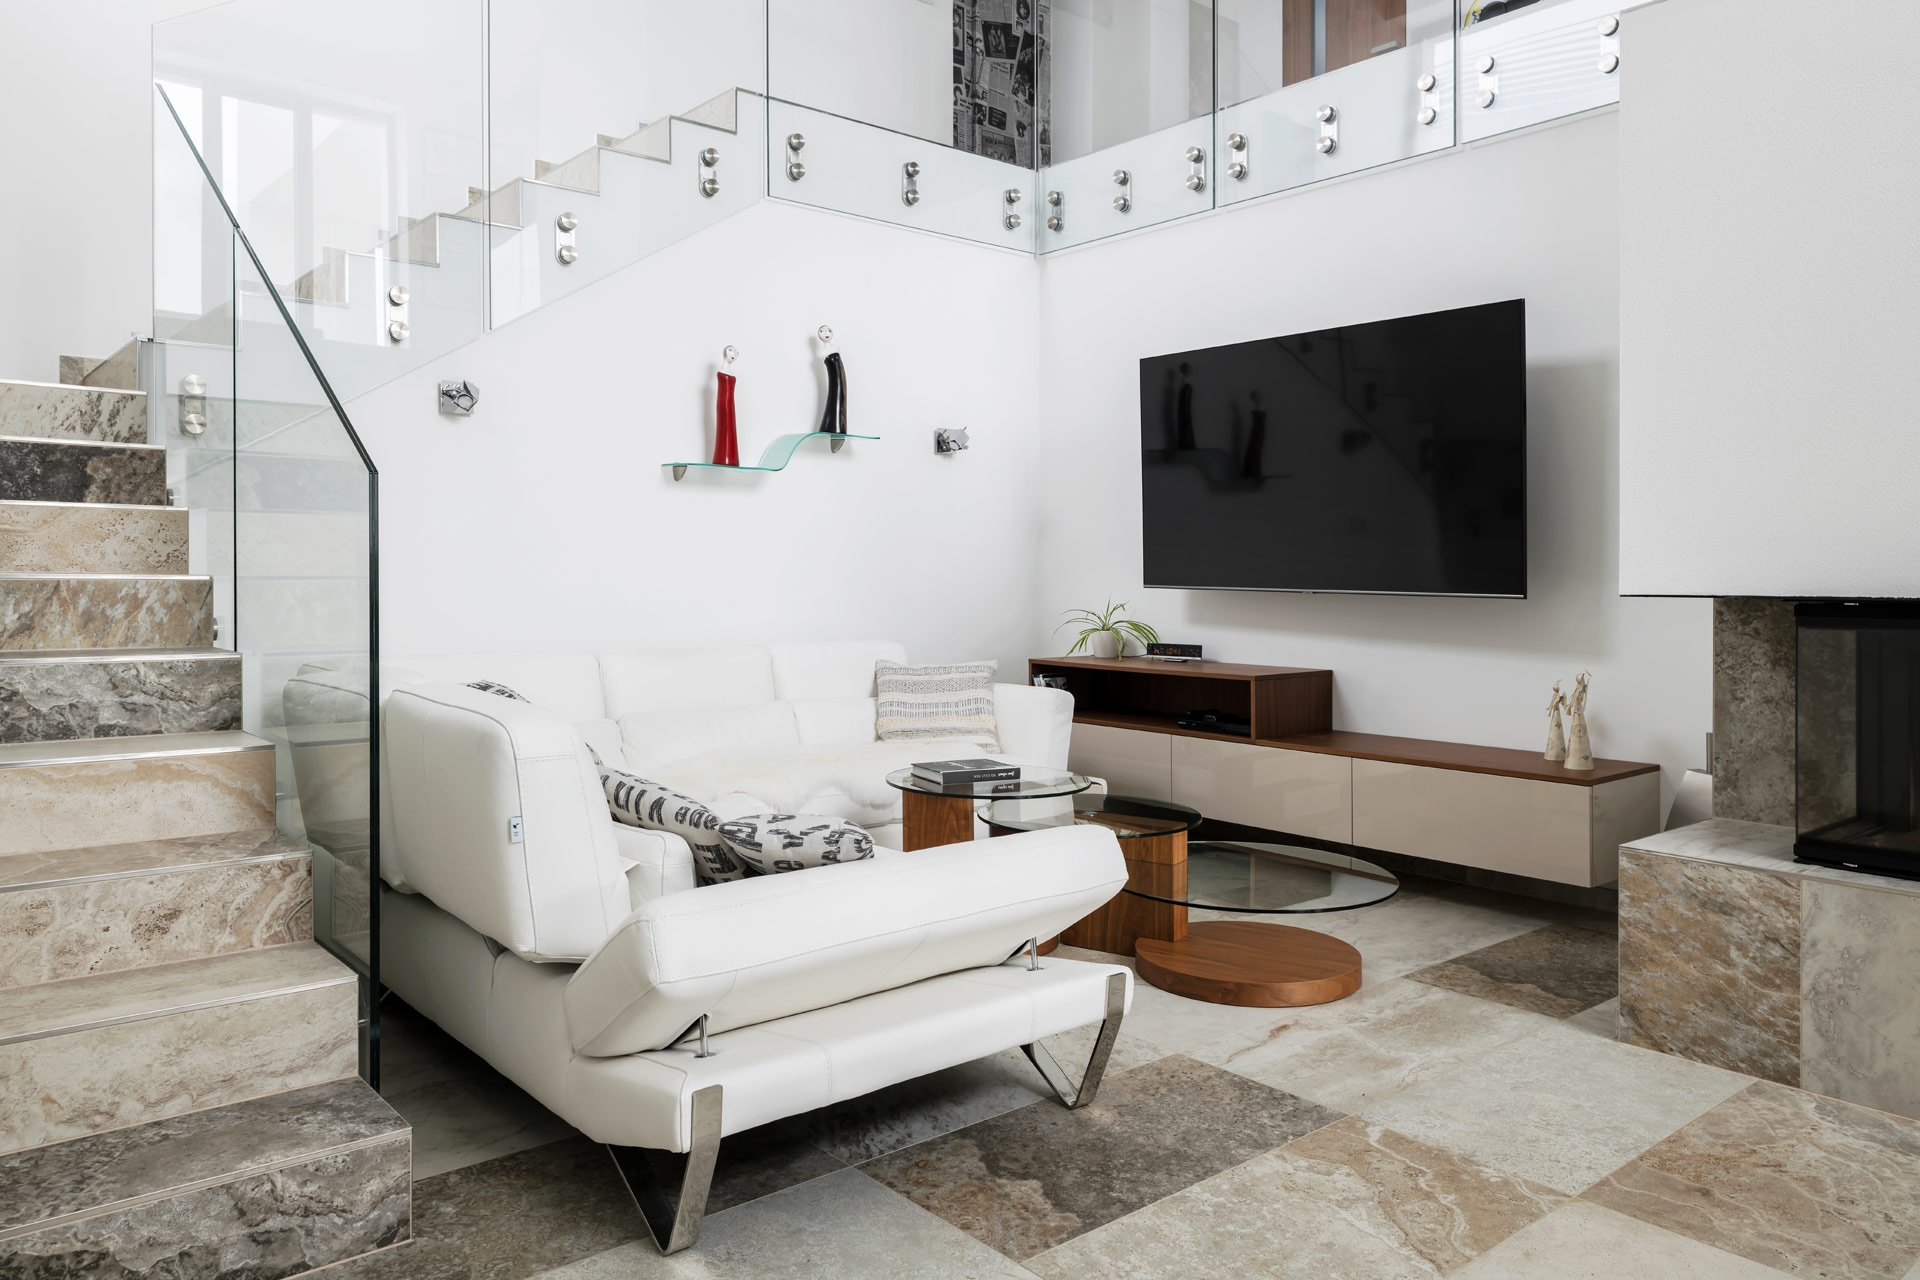 Hanák Furniture Realization of living room